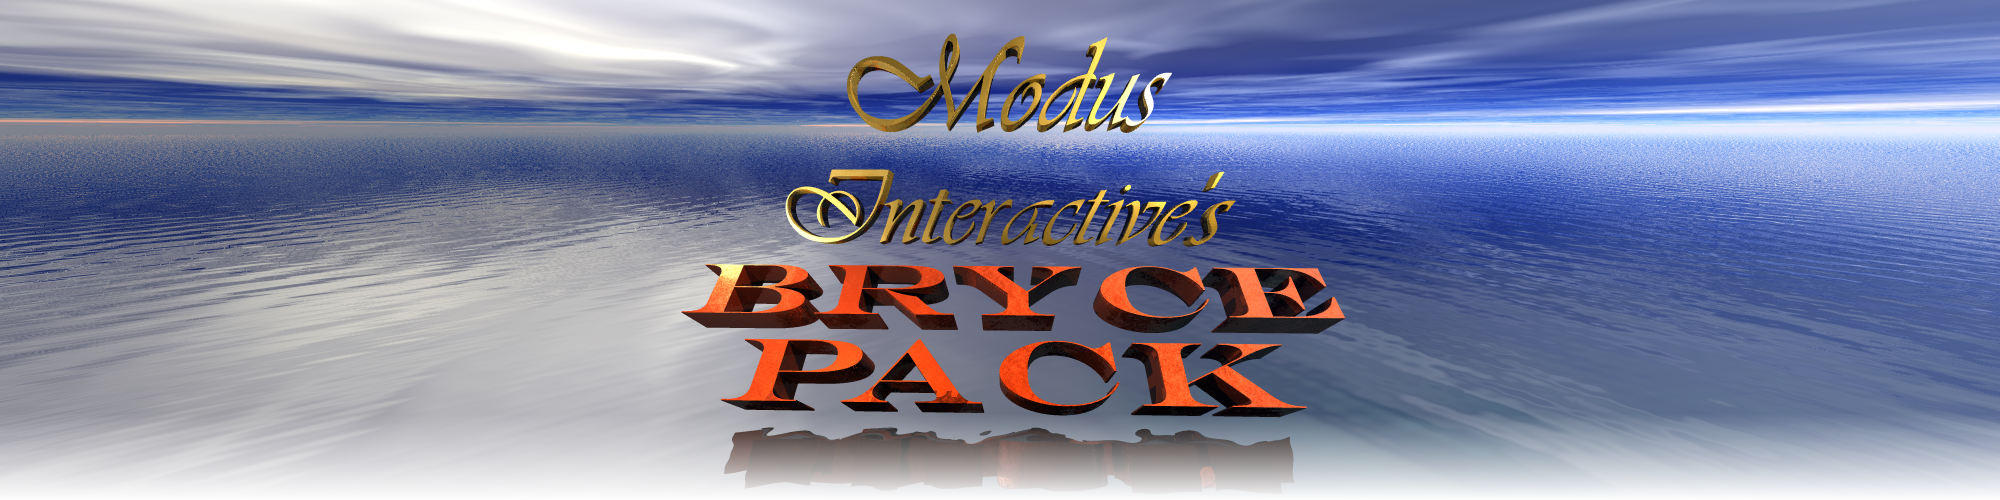 Bryce Render Pack v1